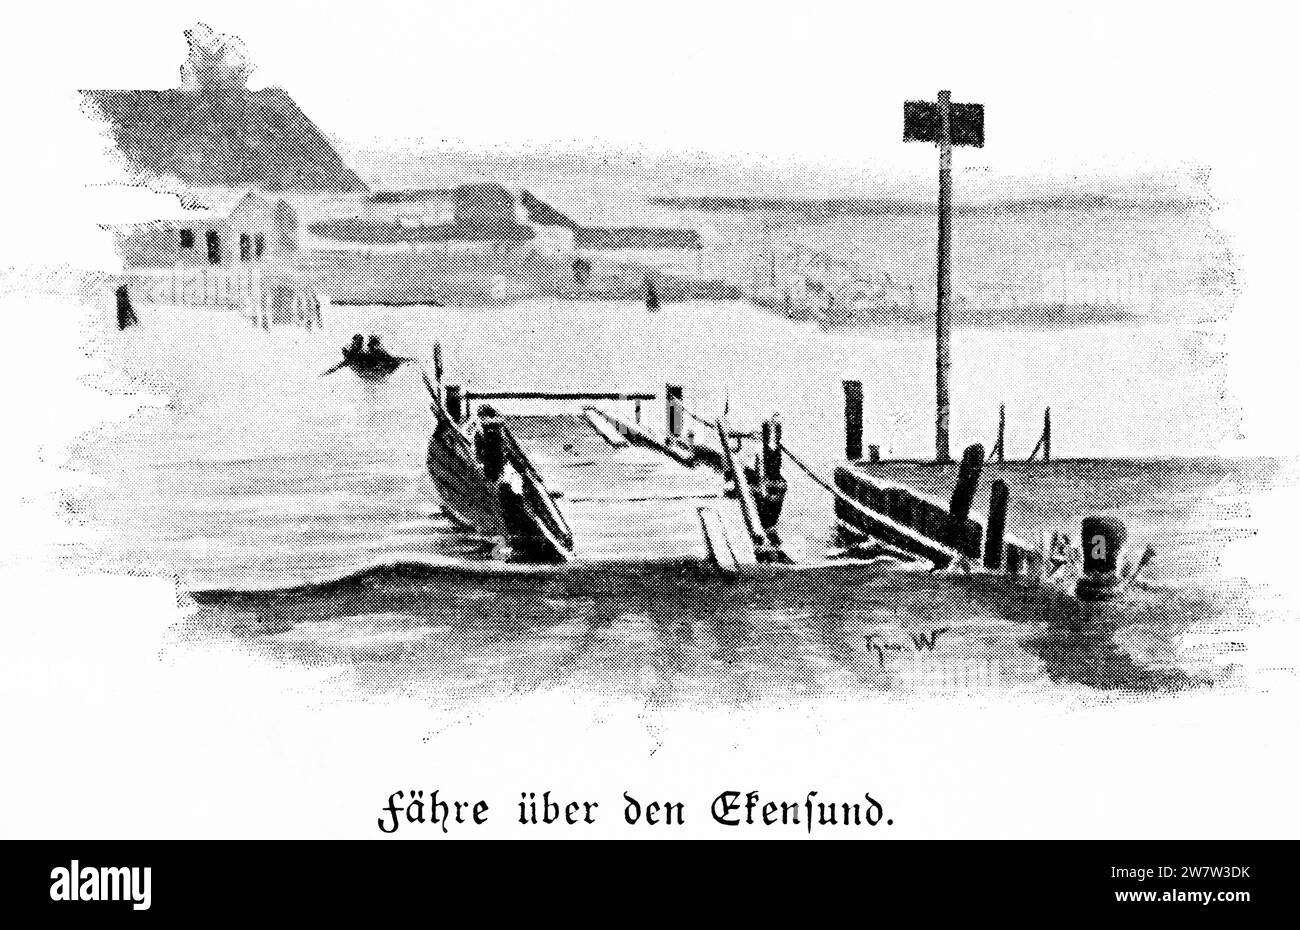 Fähre über Egernsund oder Ekensund, totay Dänemark, am Flensburger Fjord, Schleswig-Holstein, Norddeutschland, histrorische Abbildung 1896 Stockfoto